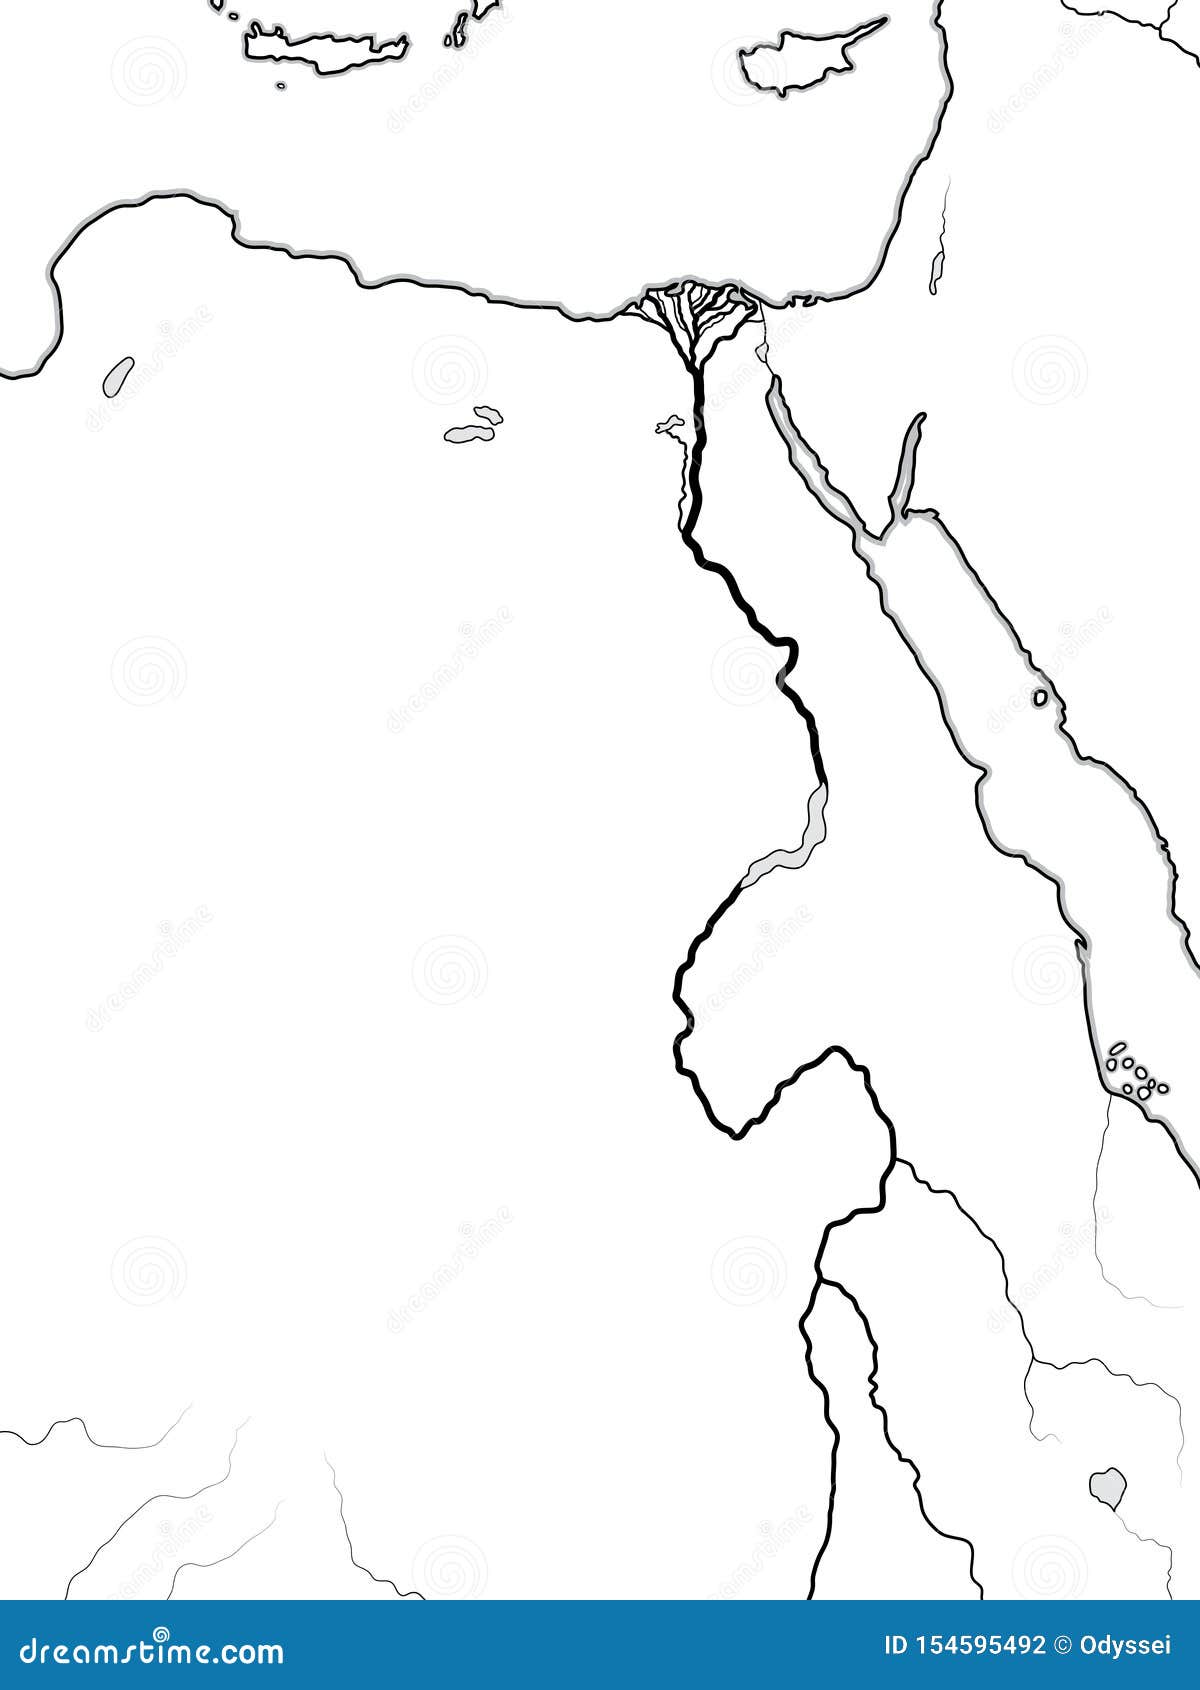 Карта мира ЕГИПТА, НУБИЯ, ЛИВИИ: Древний египет, Ливия, Нубия, Нил \u0026перепад Географическая диаграмма Иллюстрация вектора - иллюстрациинасчитывающей географическо, сво: 154595492